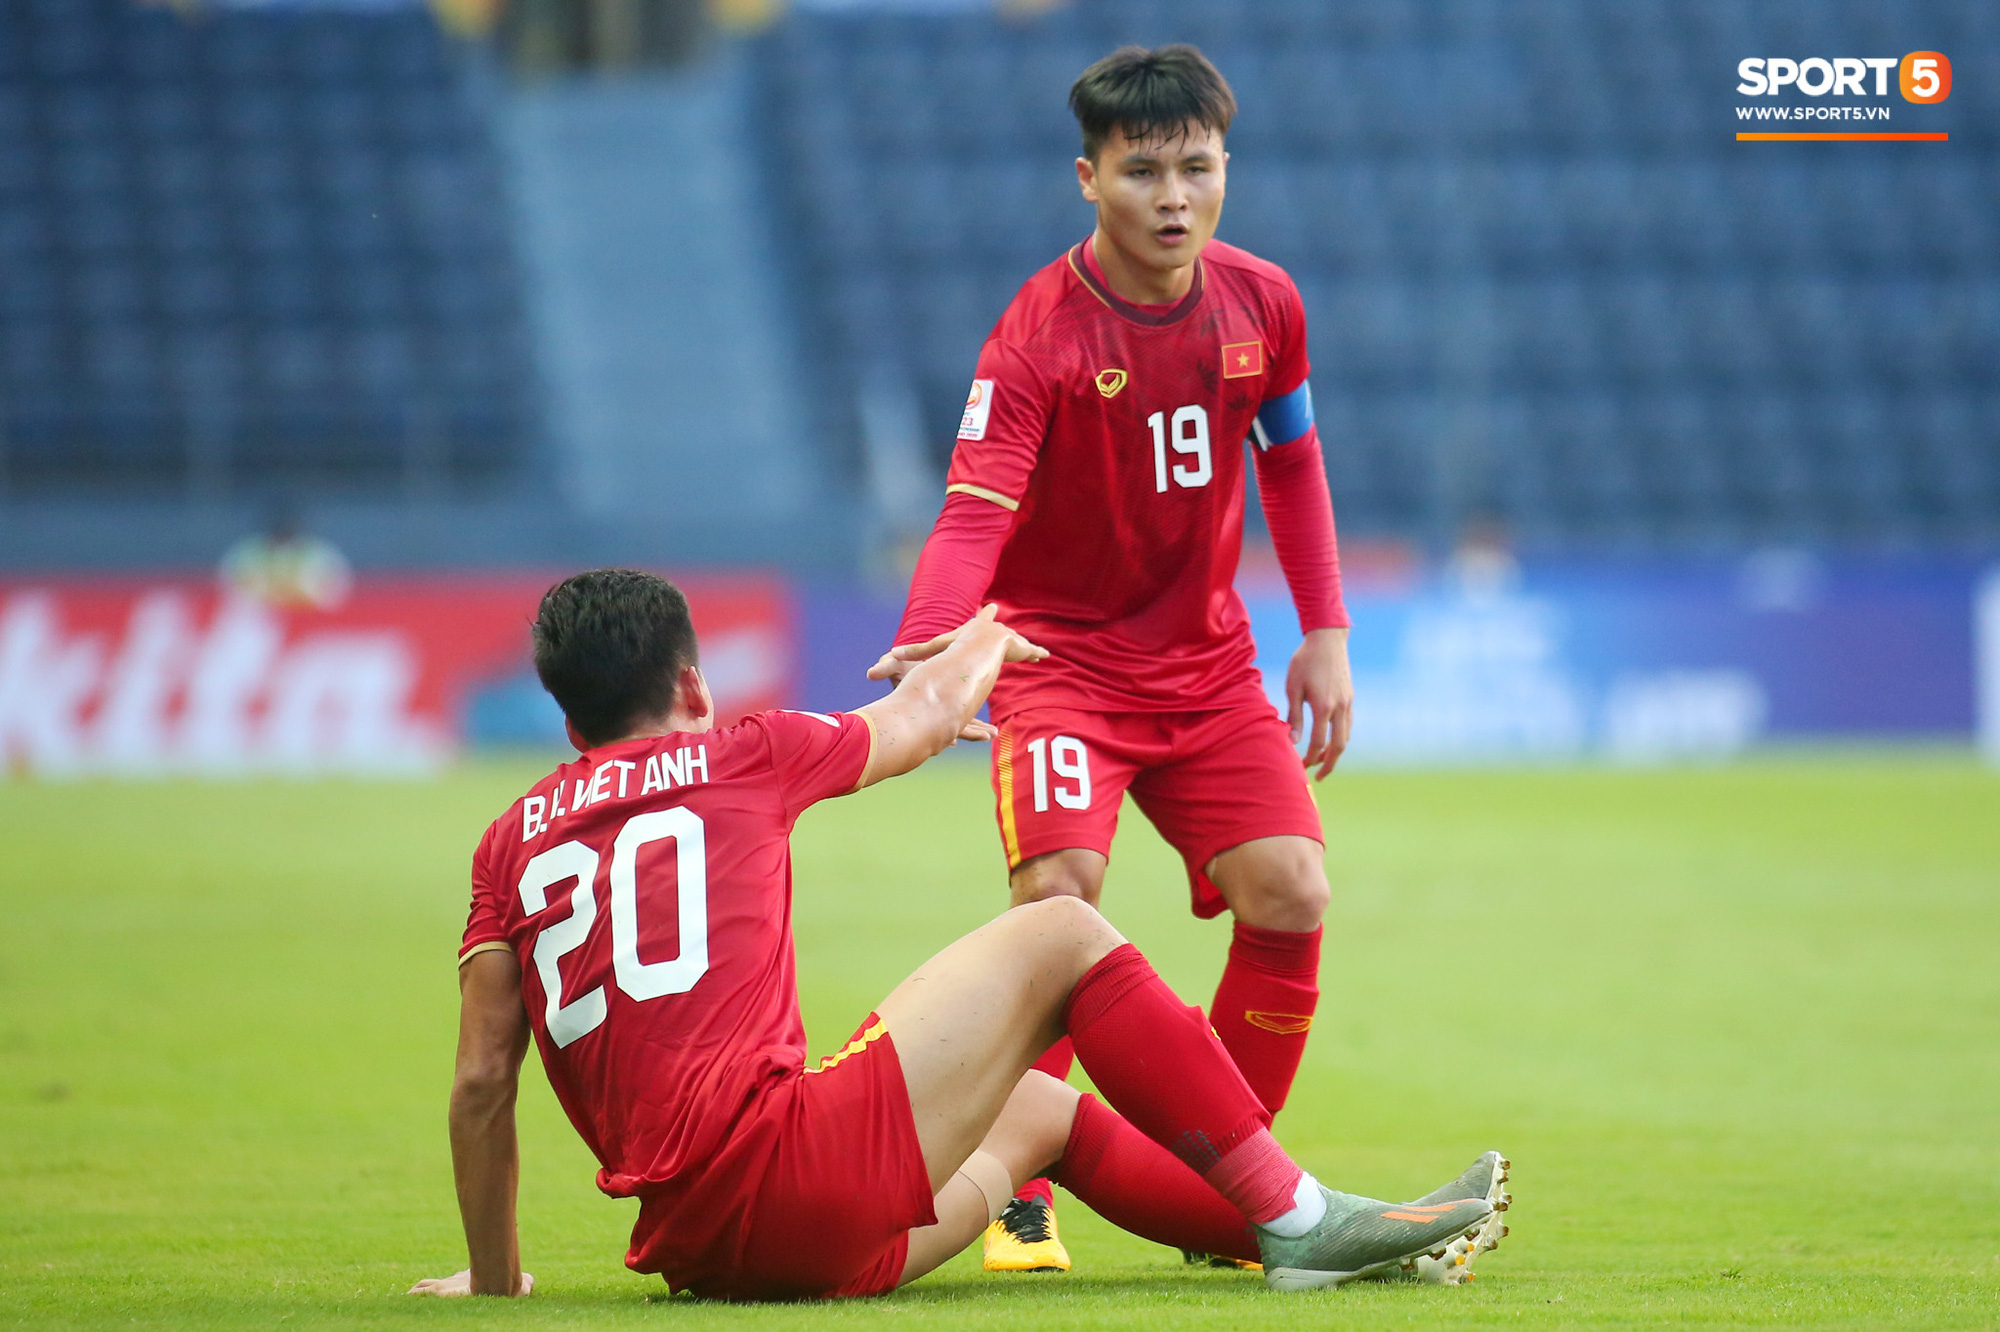 Cận cảnh Quang Hải bị cầu thủ U23 UAE đạp chân nguy hiểm từ phía sau, suýt gặp chấn thương nặng  - Ảnh 10.